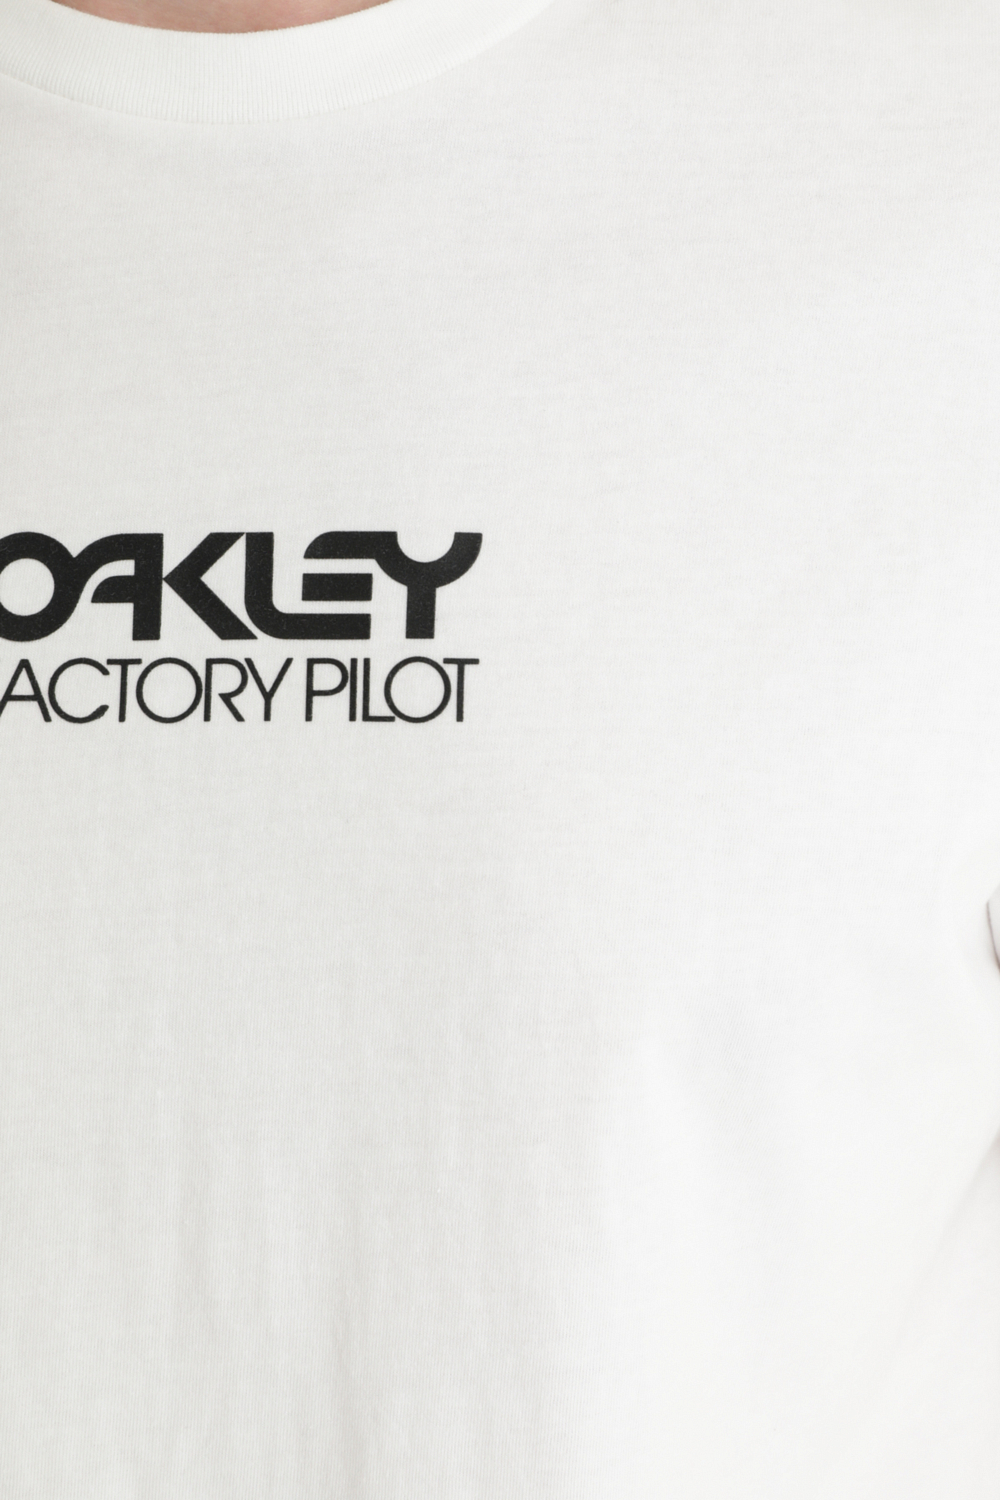 Футболка для активного отдыха Oakley Everyday Factory Pilot White